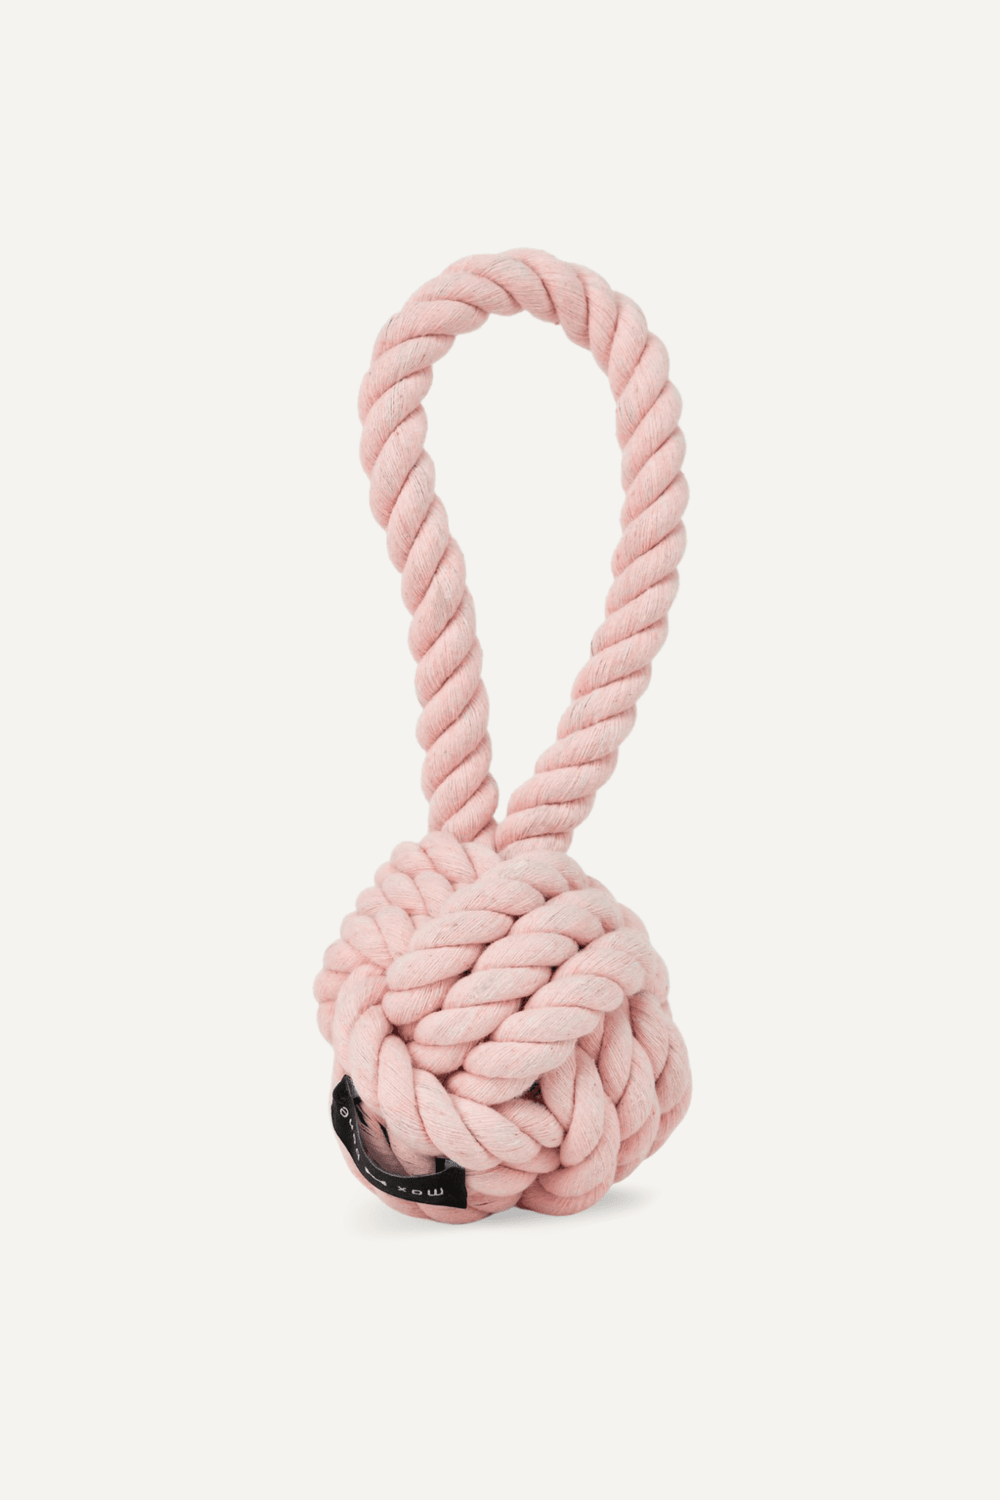 Ore' Pet Mini Loop Rope Toy